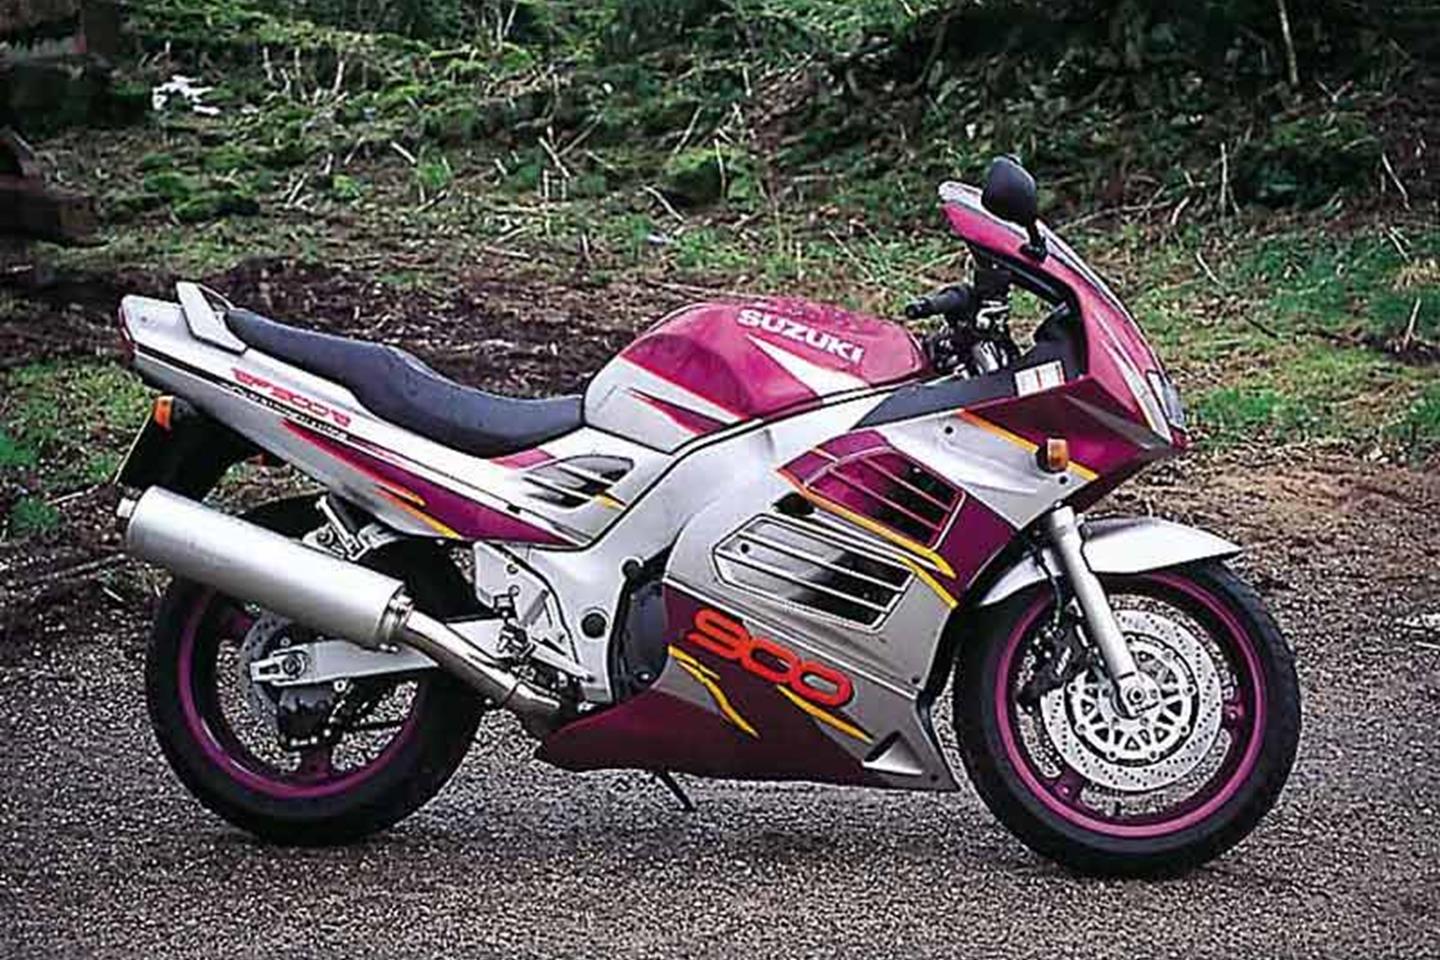 SUZUKI RF900 (1995-1999) Review | Speed, Specs & Prices